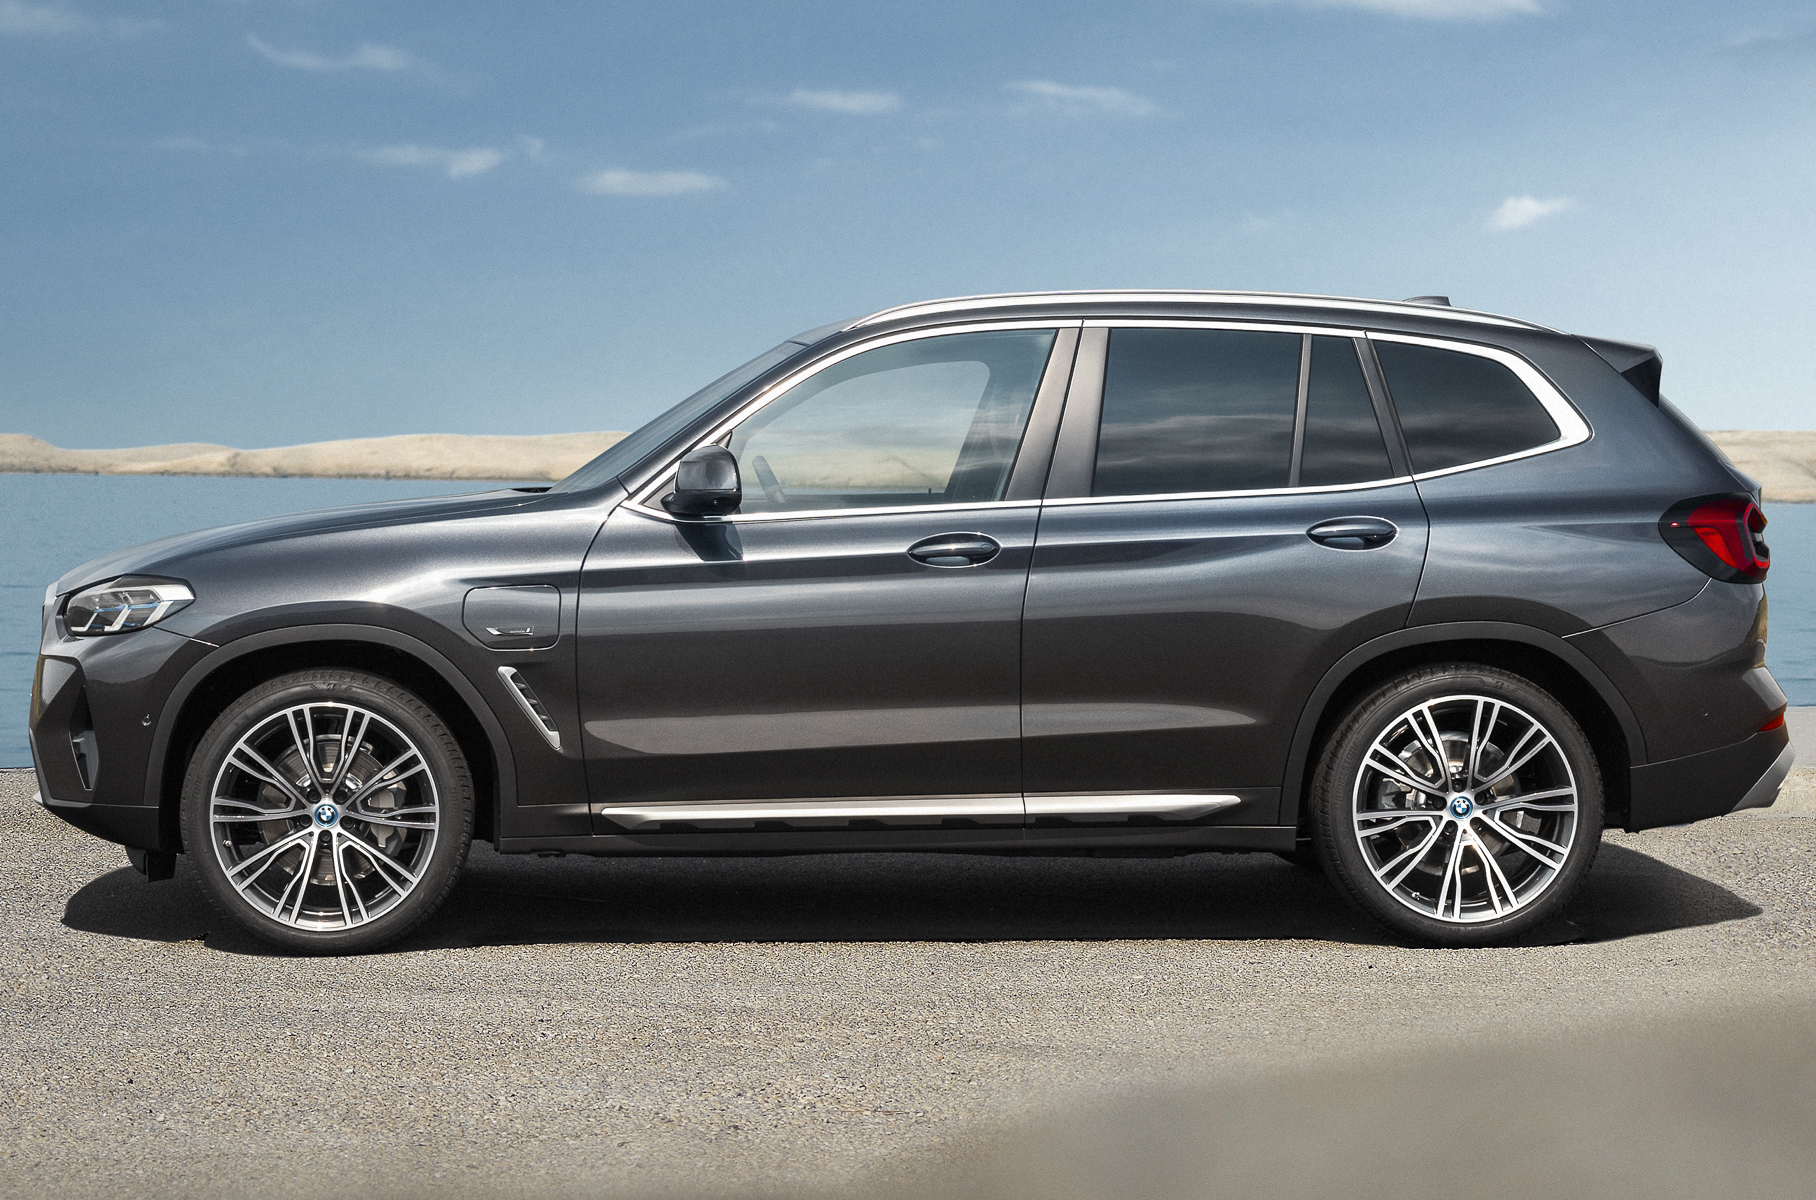 BMW X3 (третье поколение, 2017 год) Длина/ширина/высота: 4708 мм/1891 мм/1676 мм